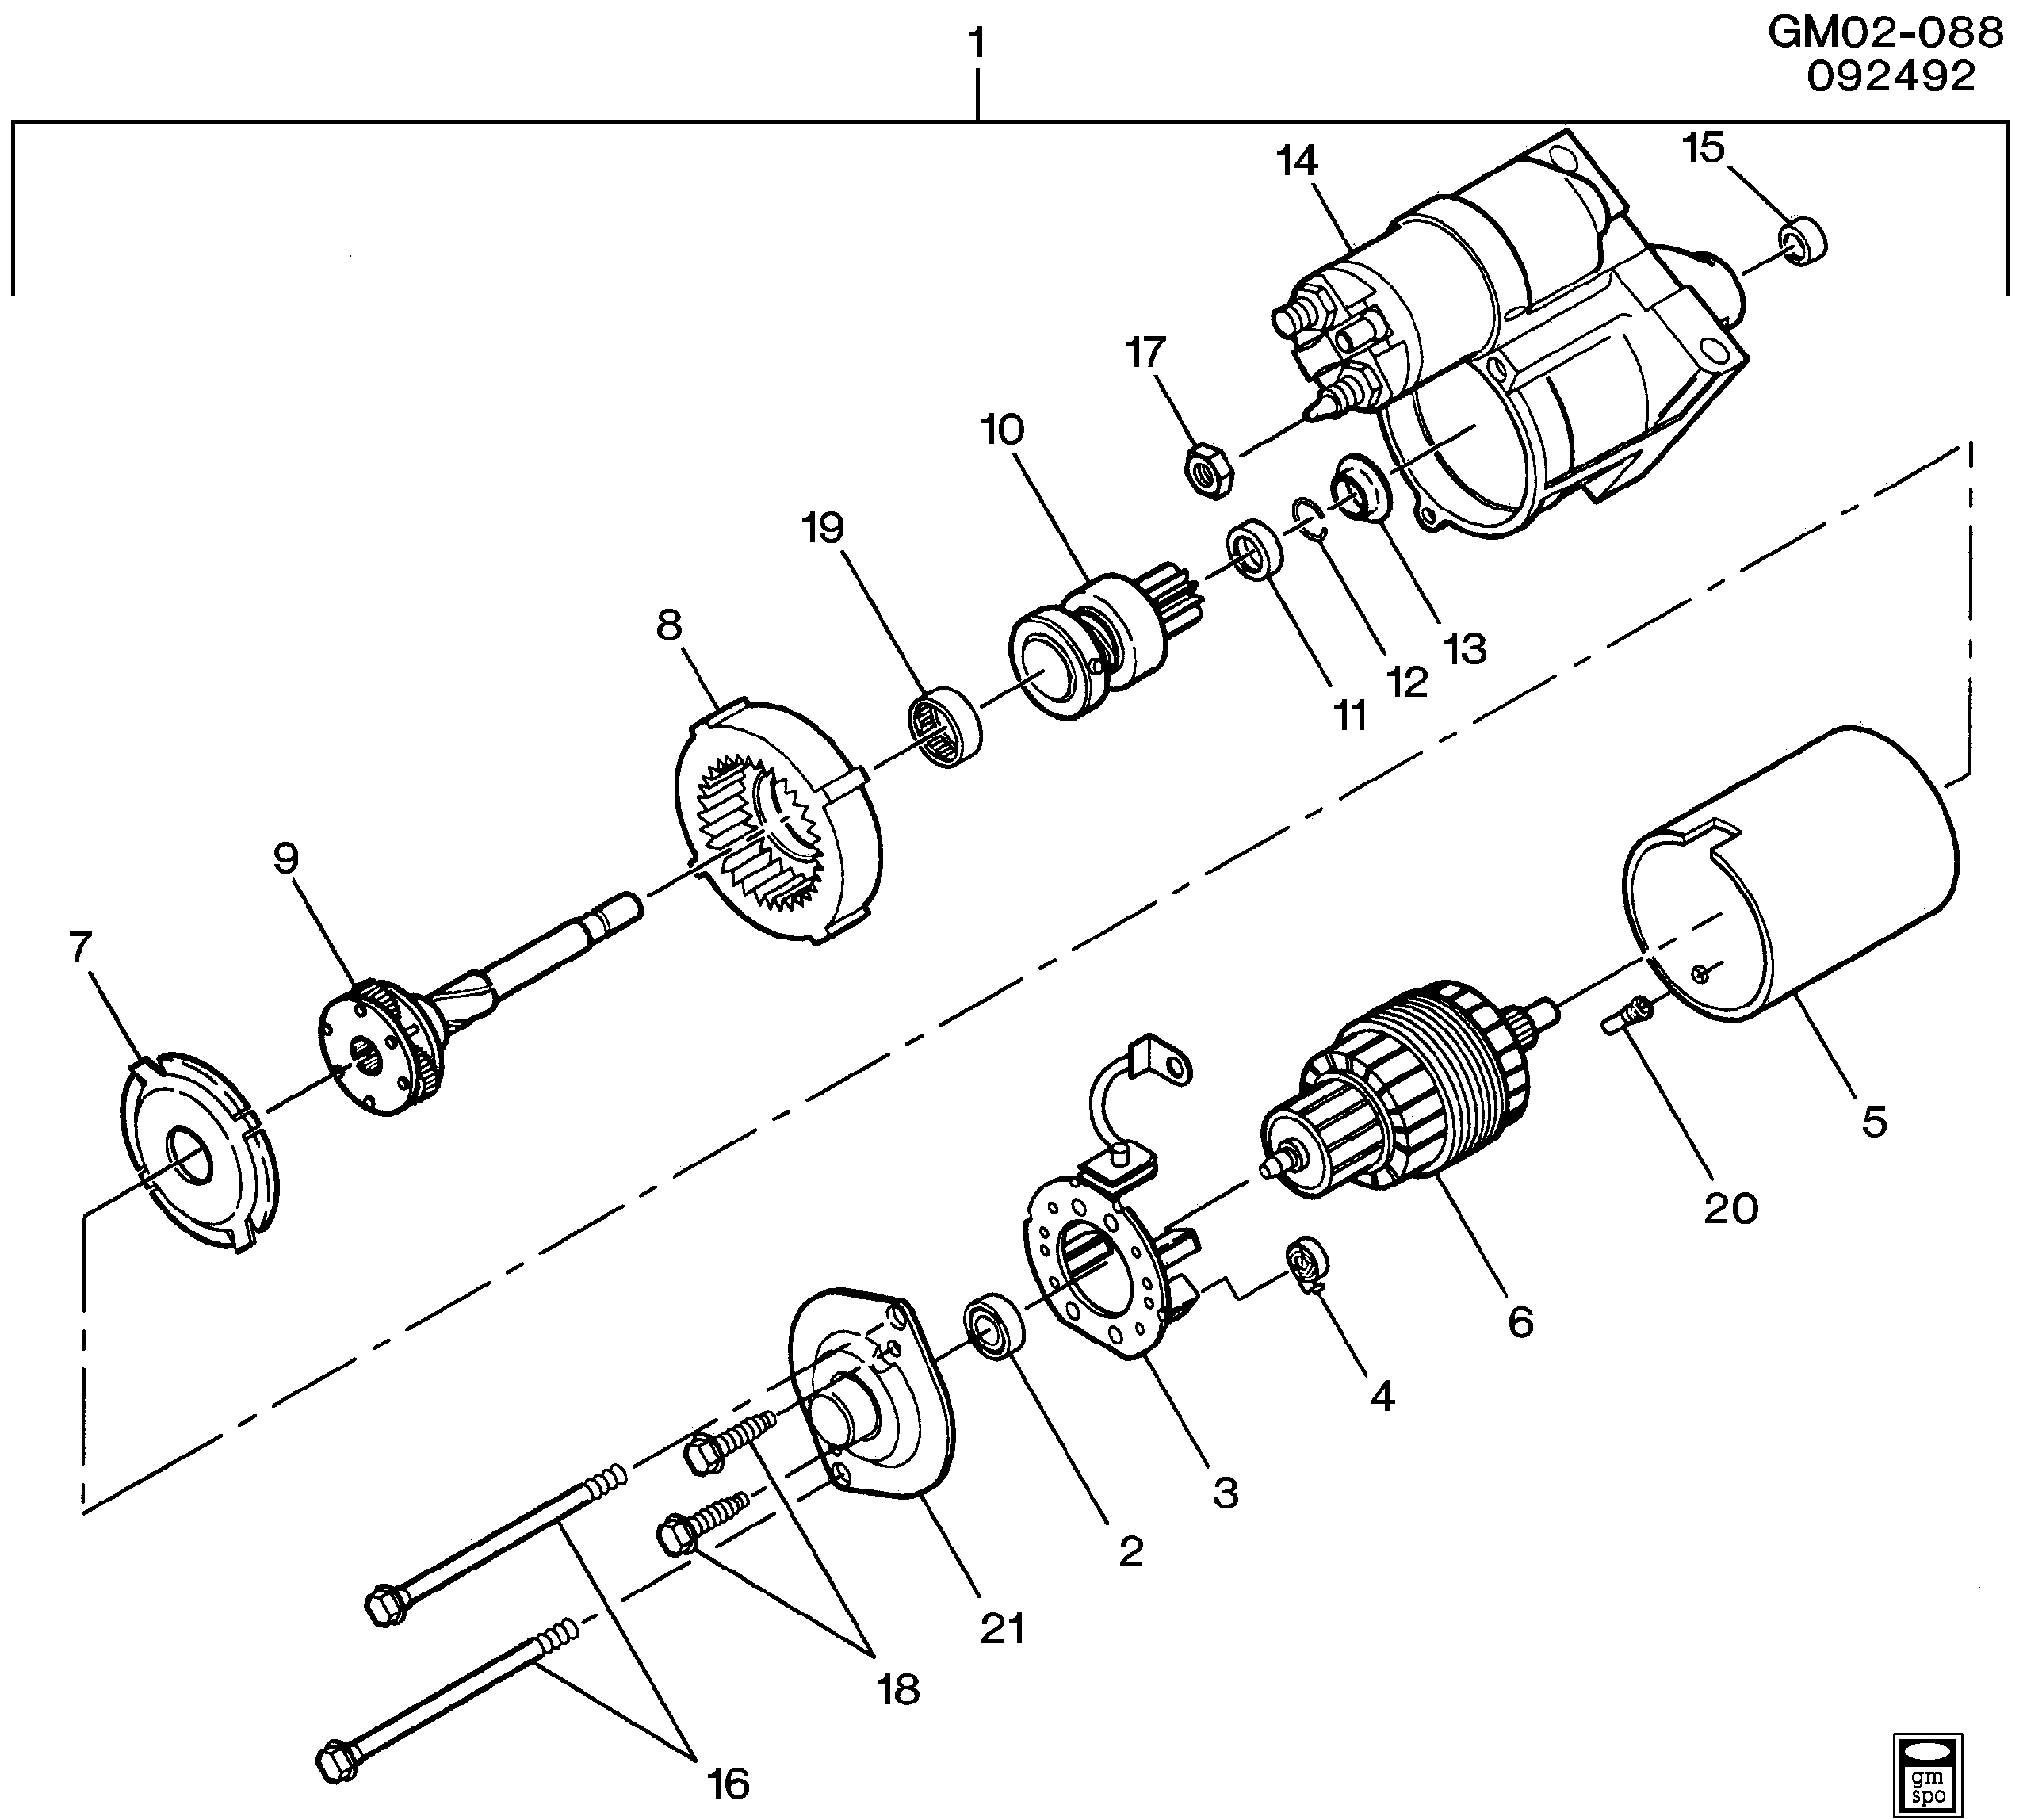 1995-1997 EK STARTER MOTOR (LD8/4.6Y,L37/4.6-9)